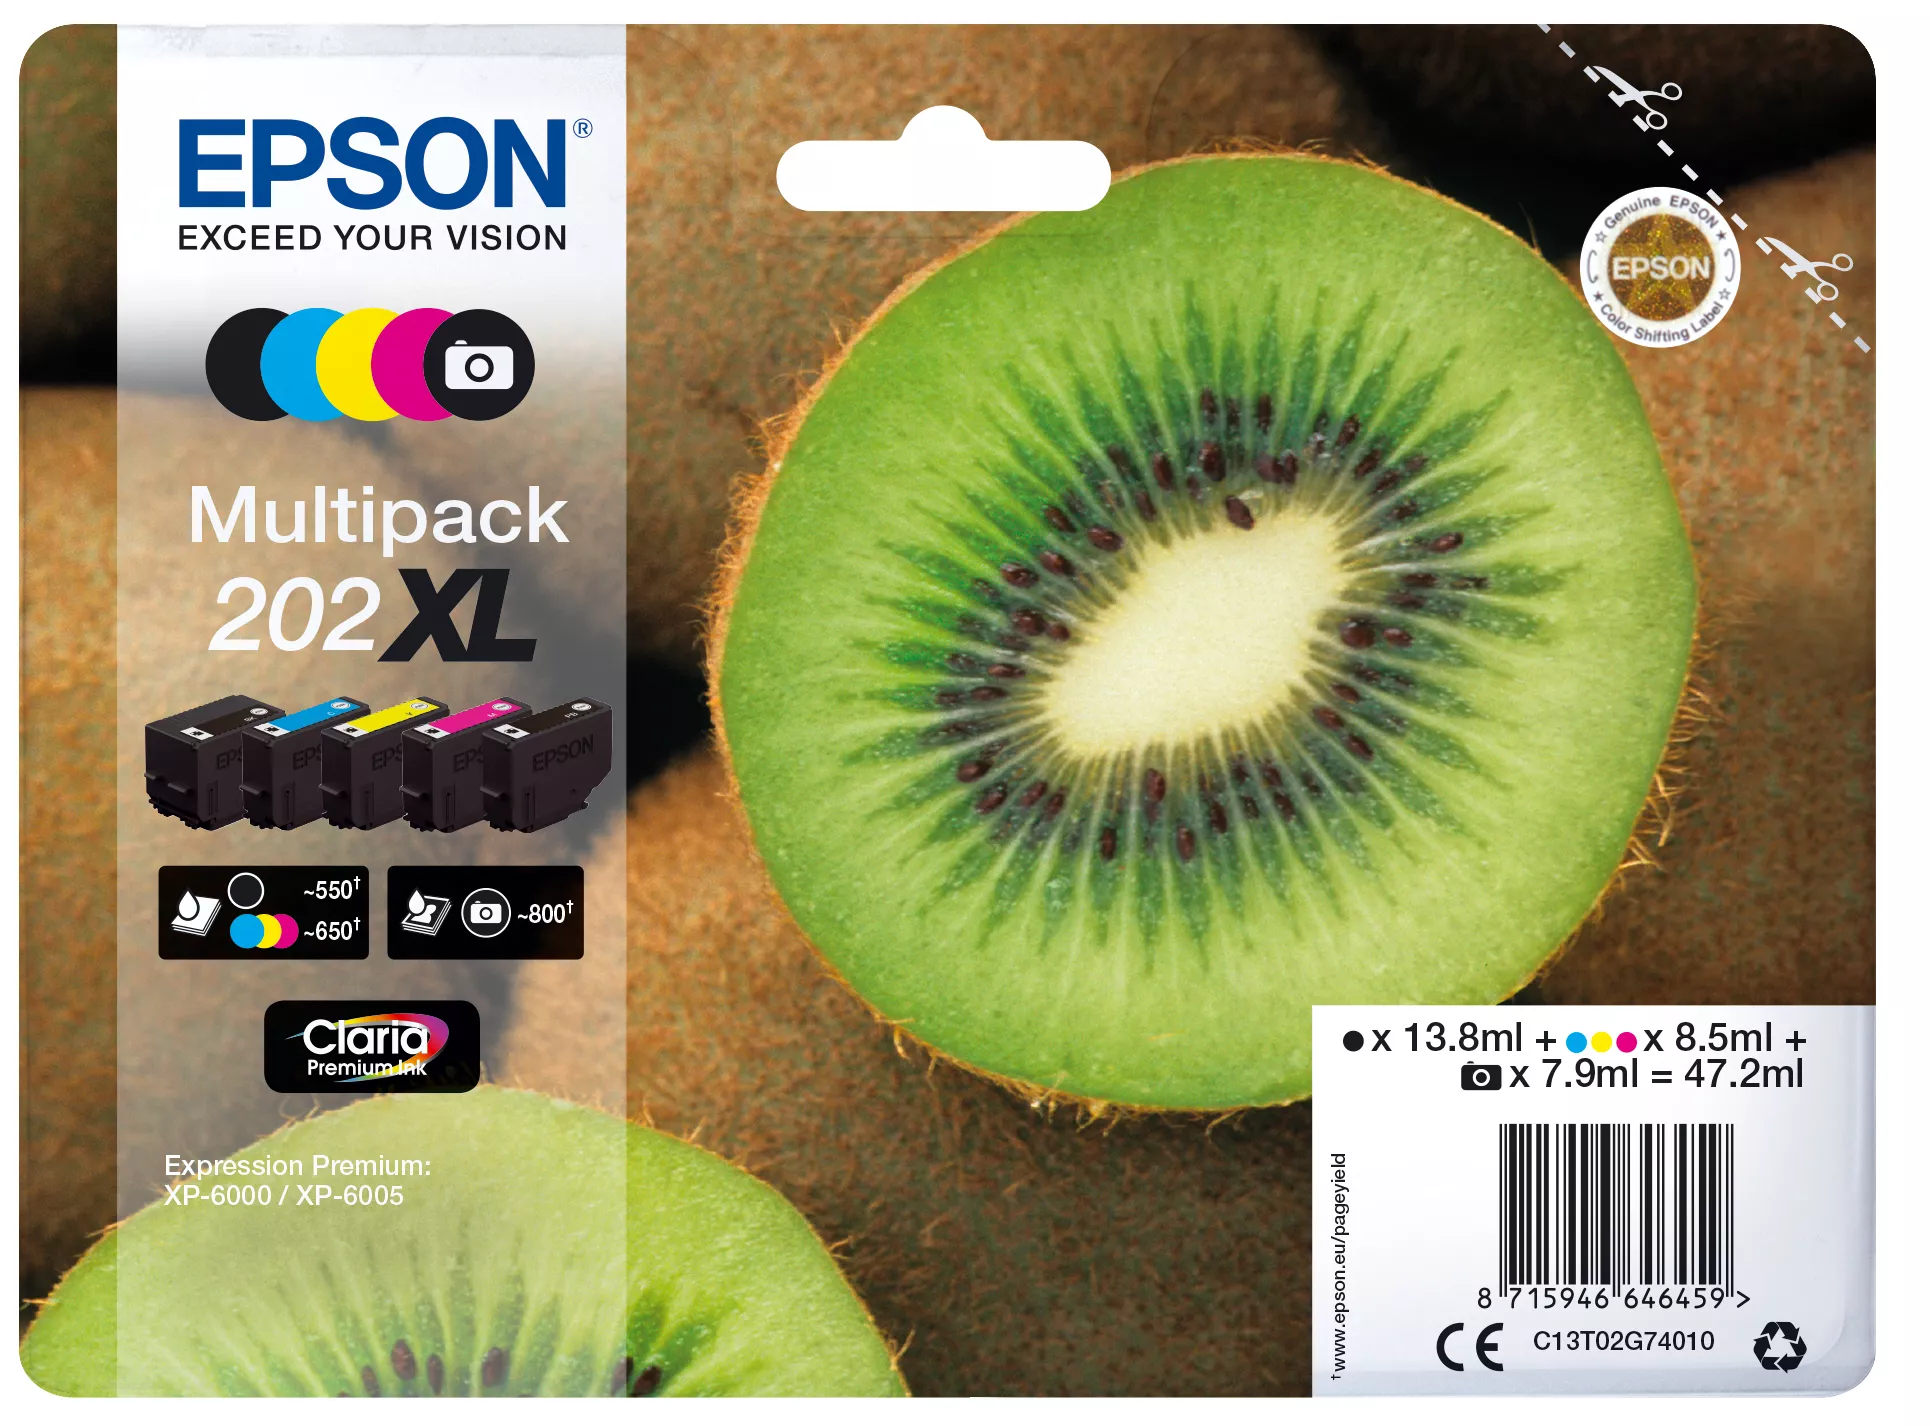 Vente Cartouches d'encre Epson Kiwi Multipack 5-colours 202XL Claria Premium Ink sur hello RSE